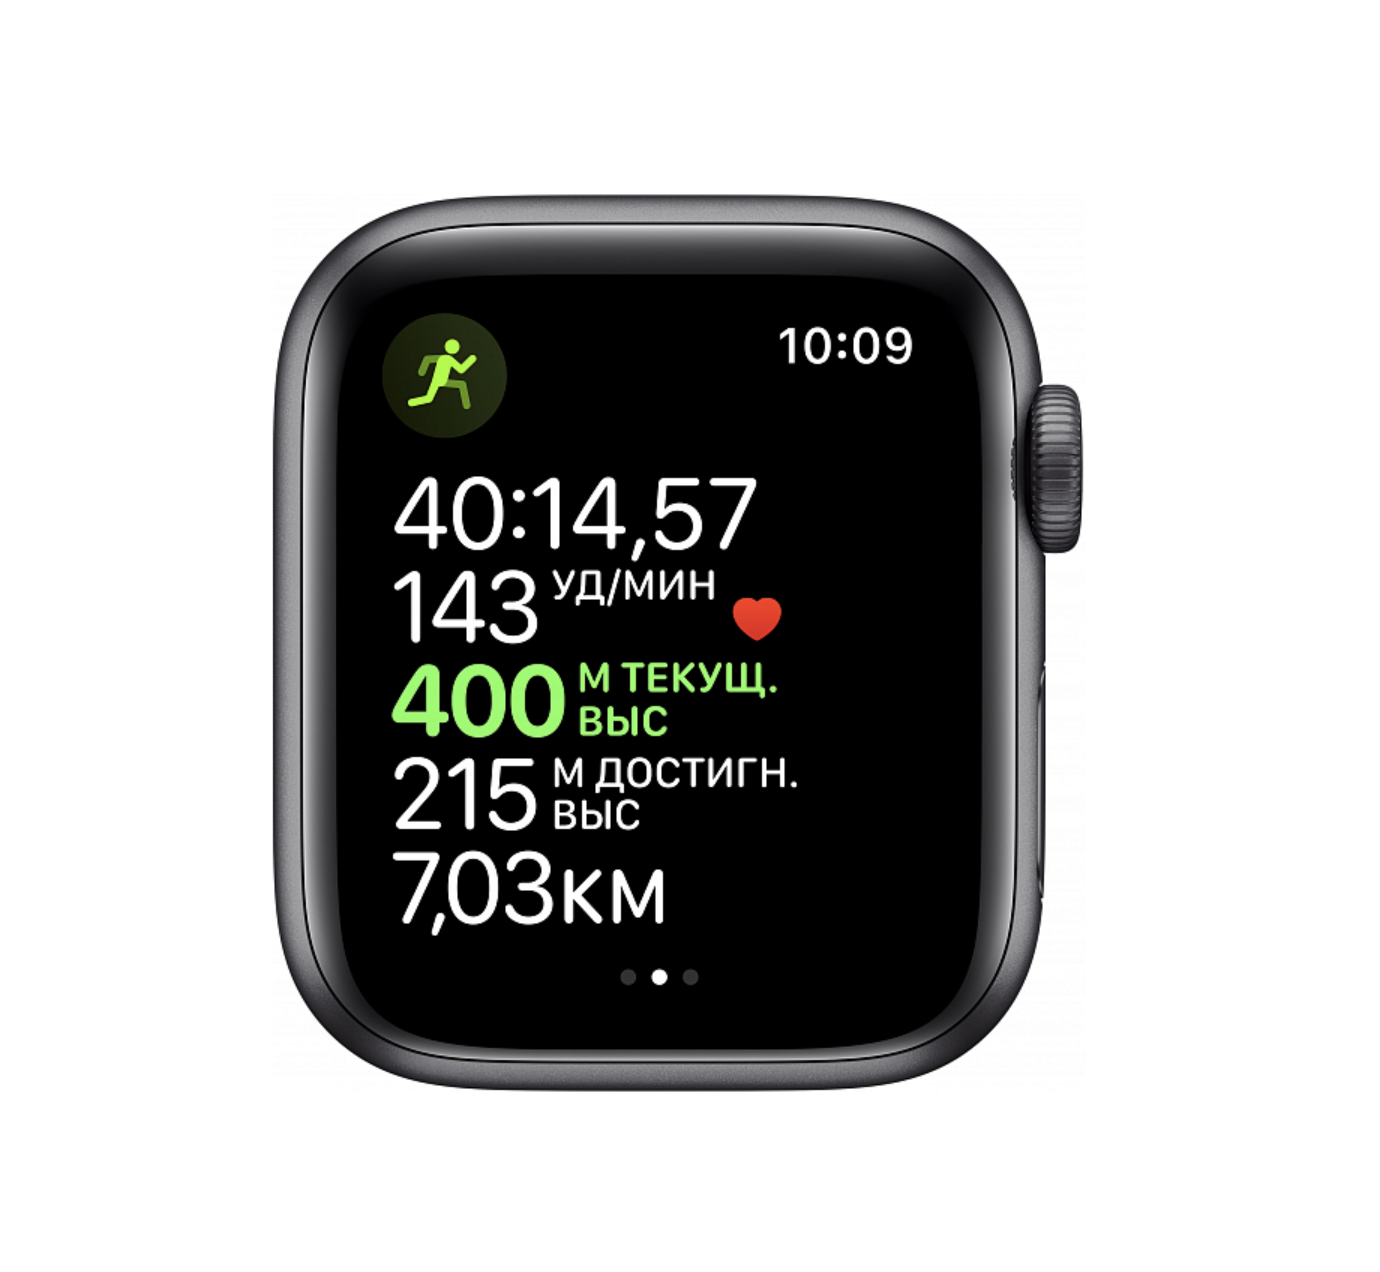 Фото — Apple Watch Series 5, 40 мм, алюминий цвета «серый космос», спортивный ремешок черного цвета